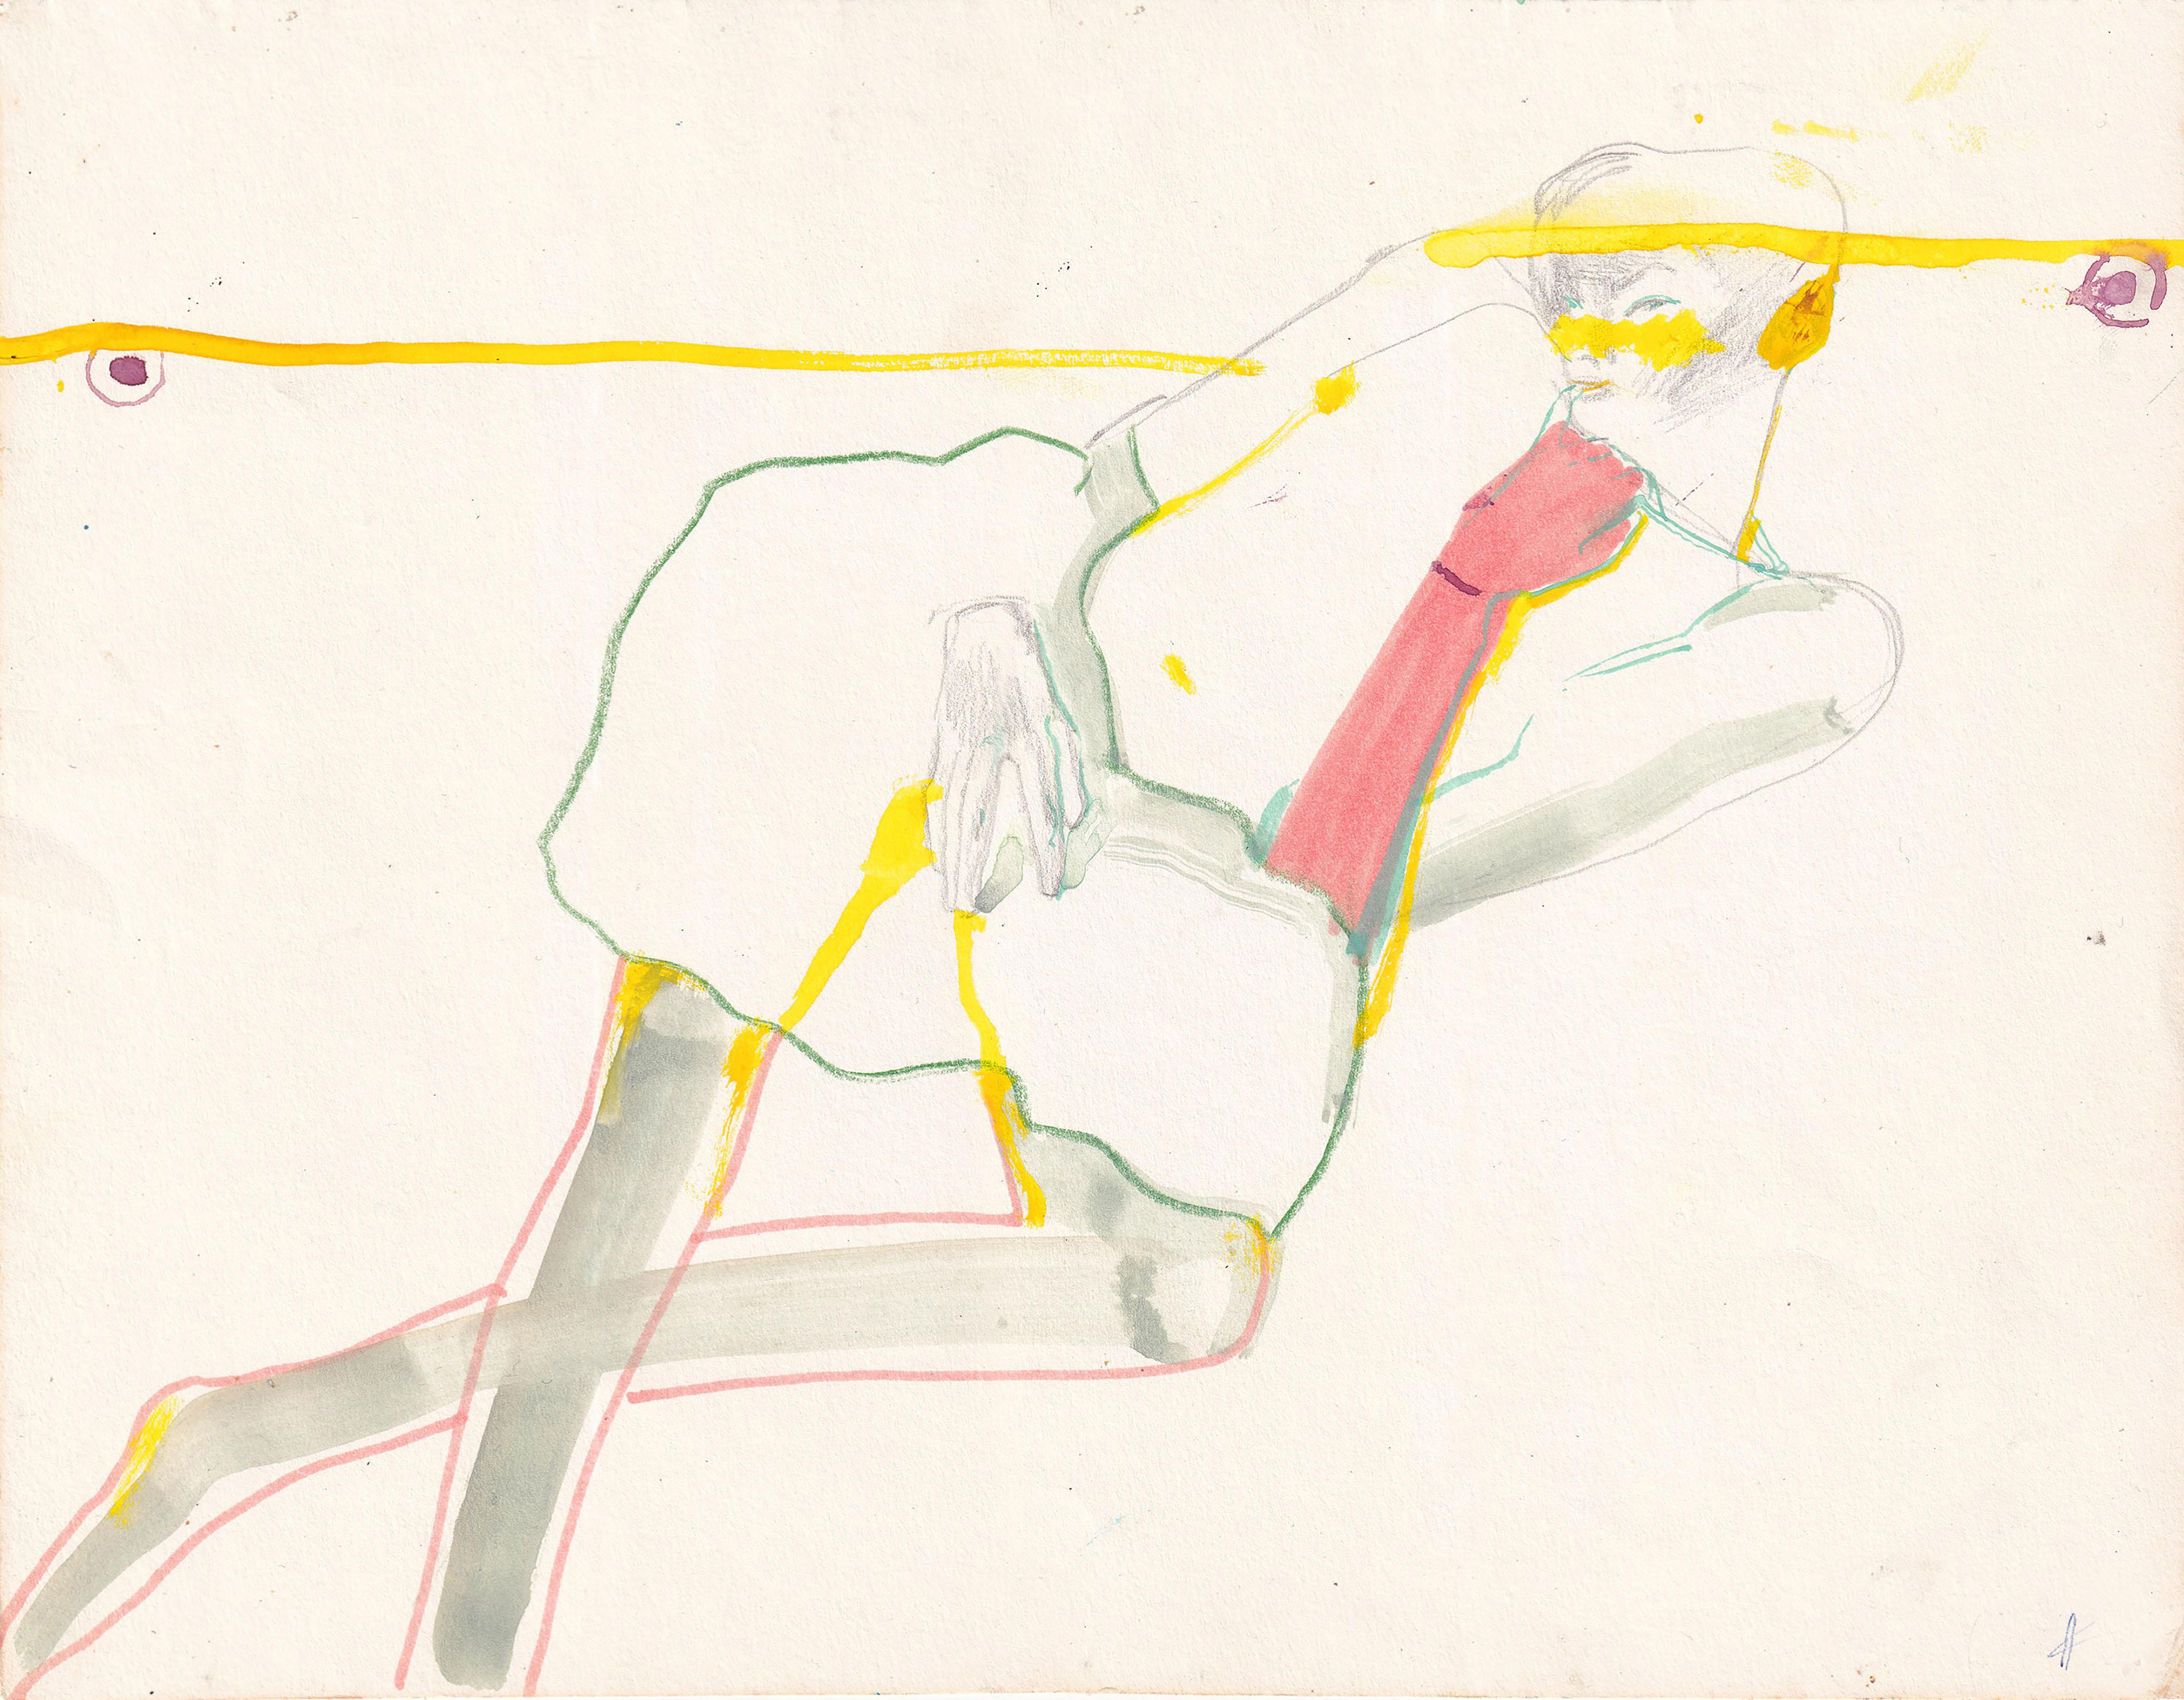 


Druck in limitierter Auflage  auf Papier
 
gelb, rosa, cremefarben

Künstlerin: Anastasia Kurakina
Titel: 